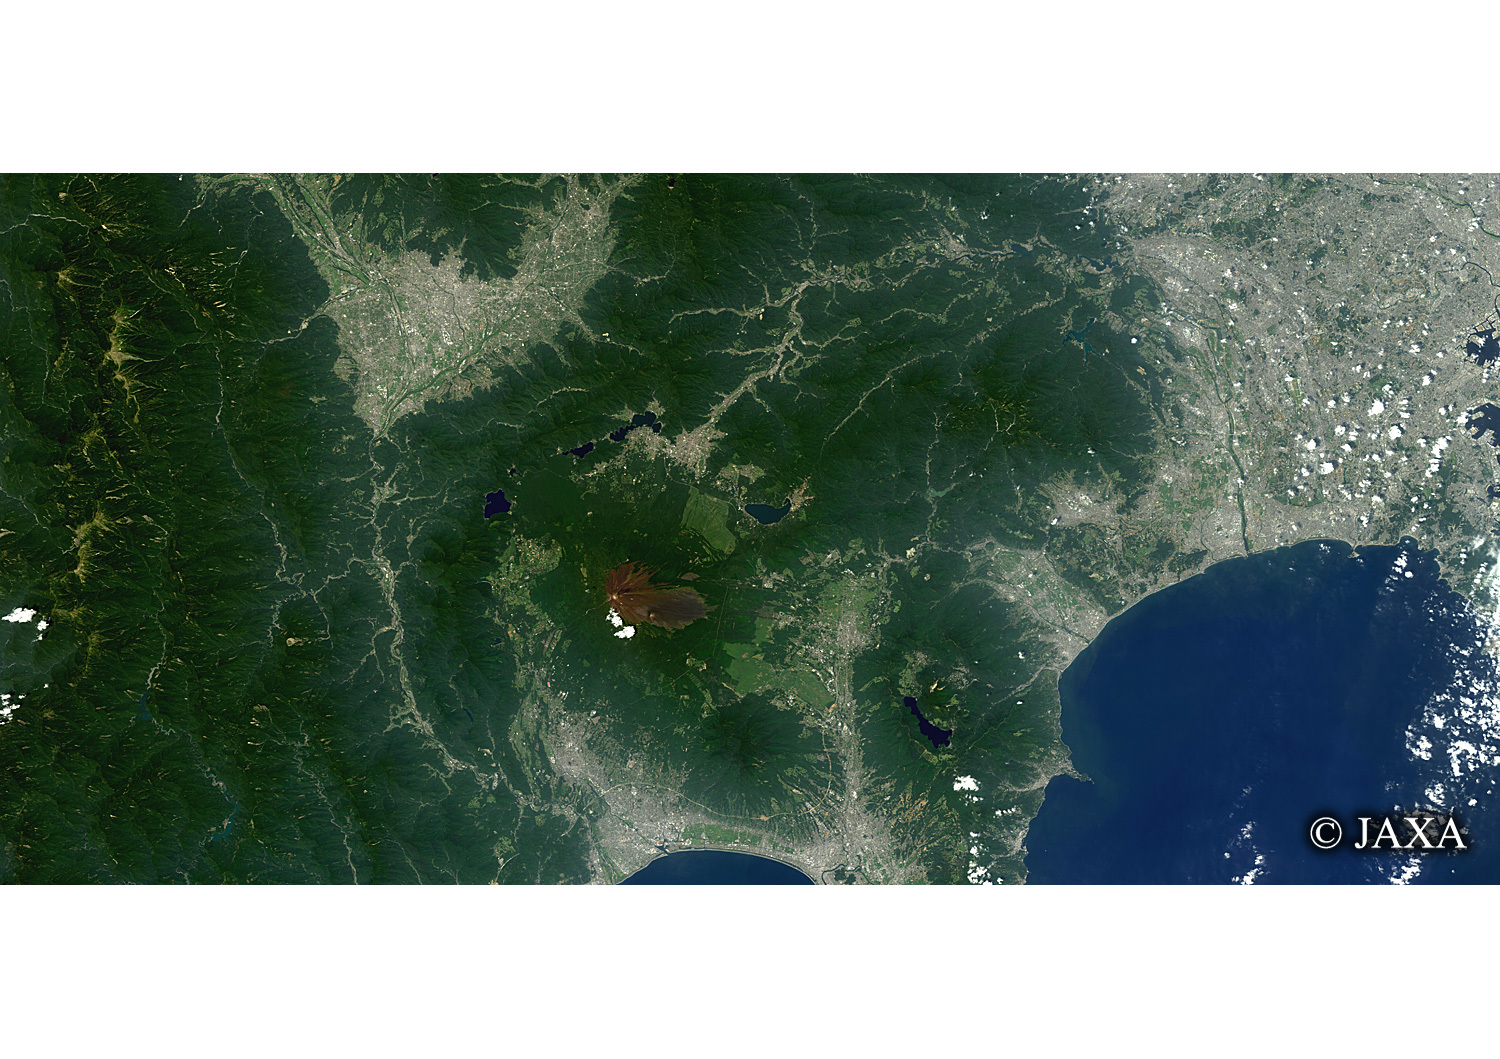 だいちから見た日本の都市 夏の富士山:衛星画像